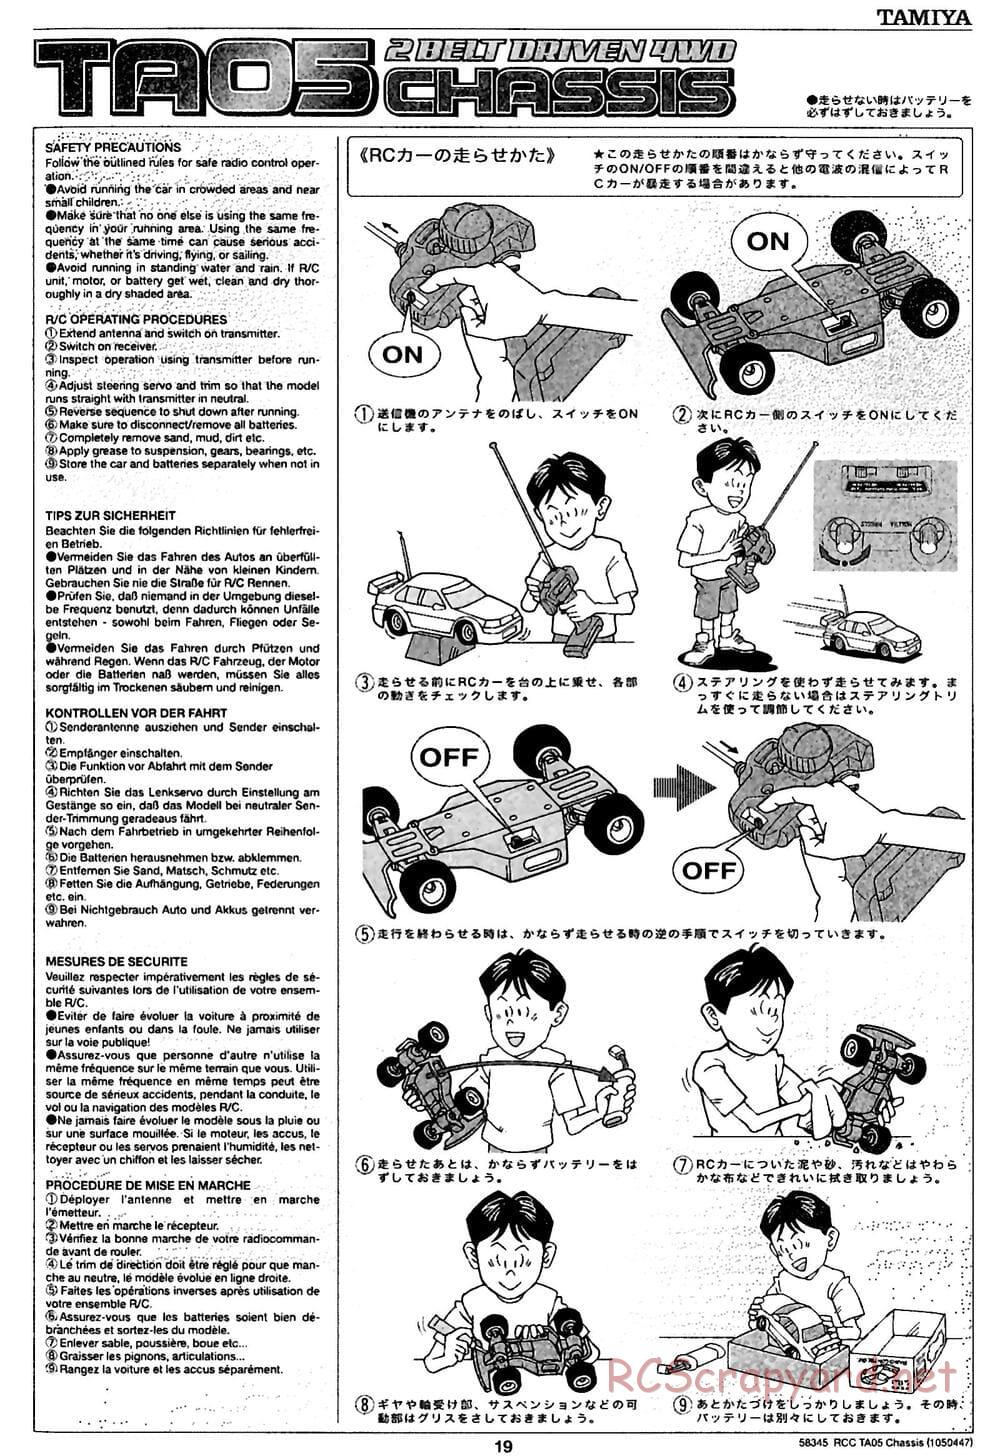 Tamiya - TA05 Chassis - Manual - Page 19